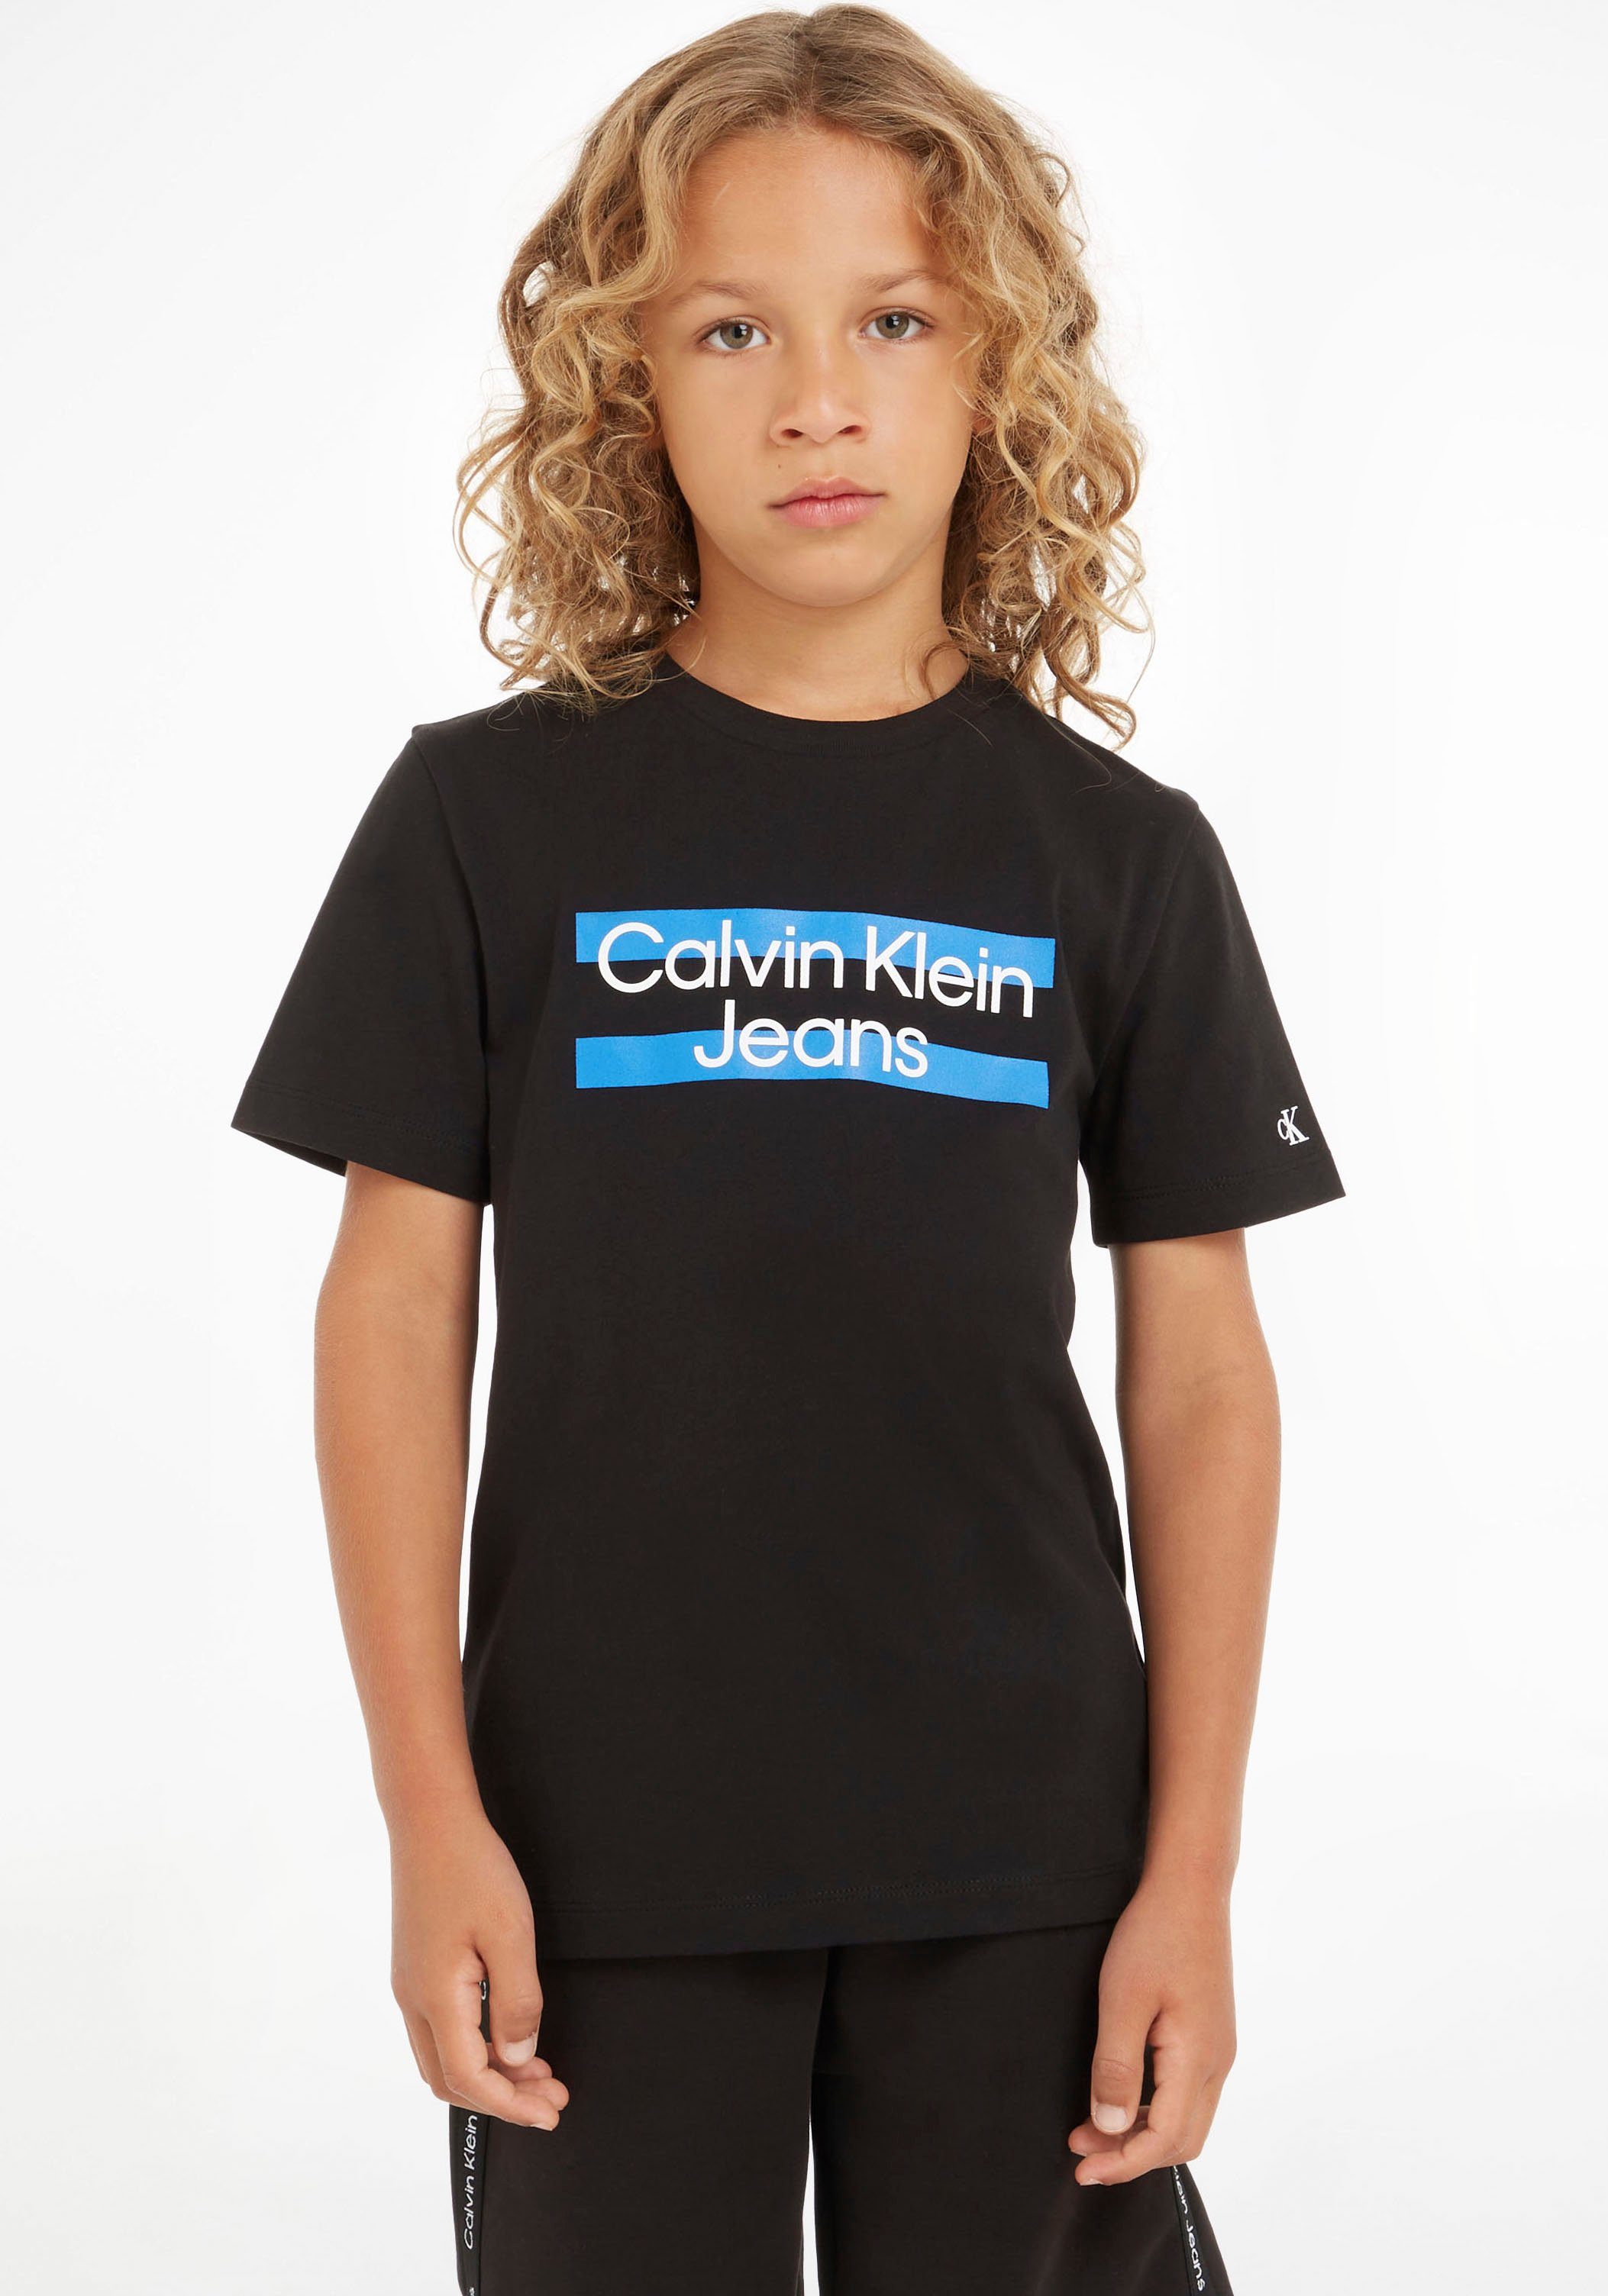 Calvin Klein Jeans T-Shirt mit Calvin Klein Logodruck auf der Brust schwarz | T-Shirts